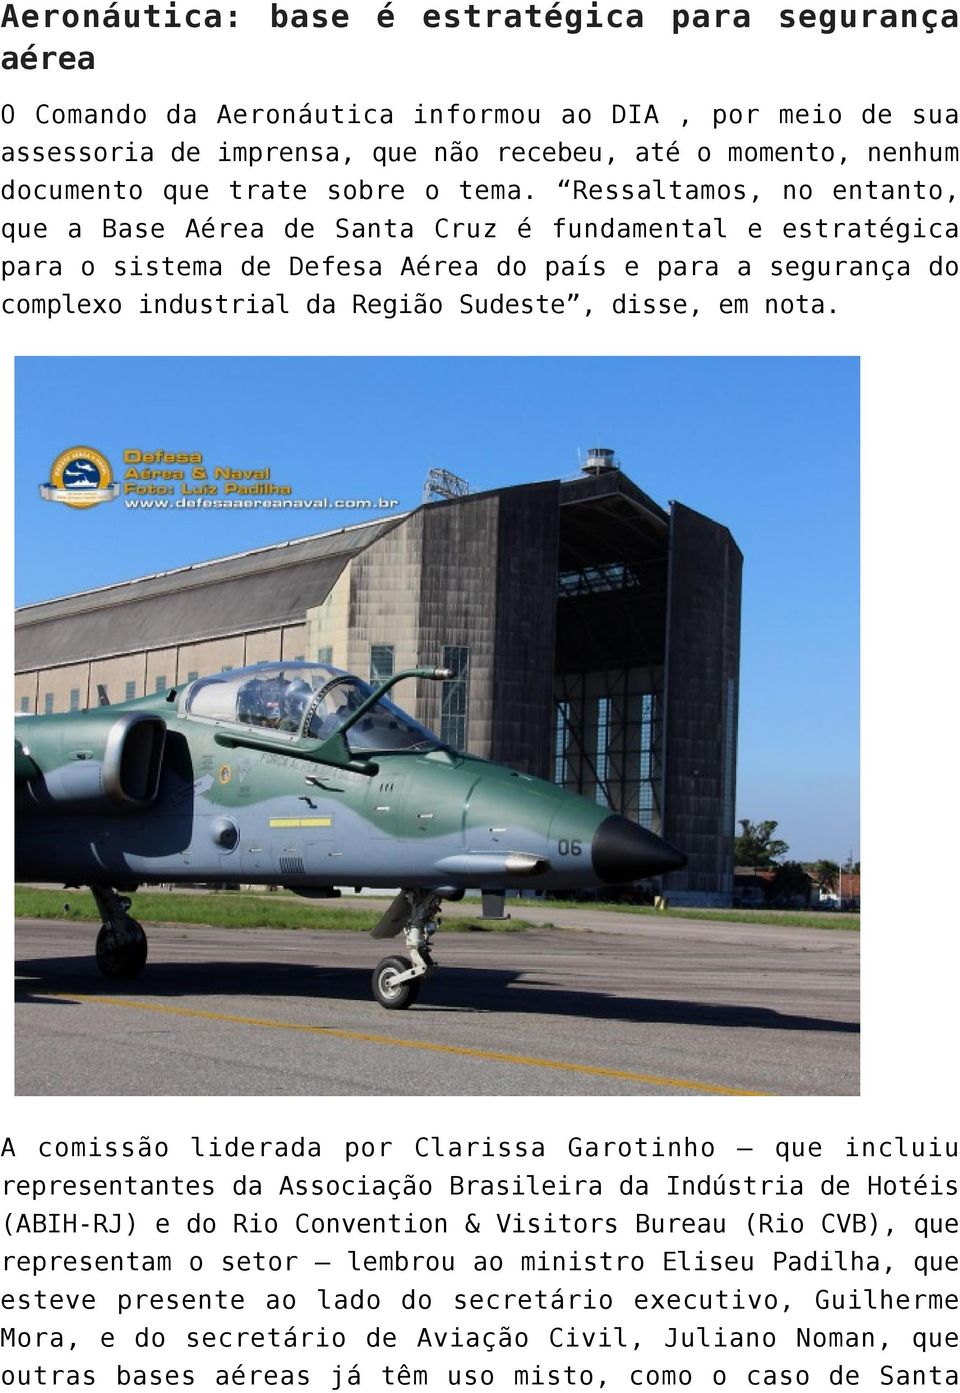 Ressaltamos, no entanto, que a Base Aérea de Santa Cruz é fundamental e estratégica para o sistema de Defesa Aérea do país e para a segurança do complexo industrial da Região Sudeste, disse, em nota.